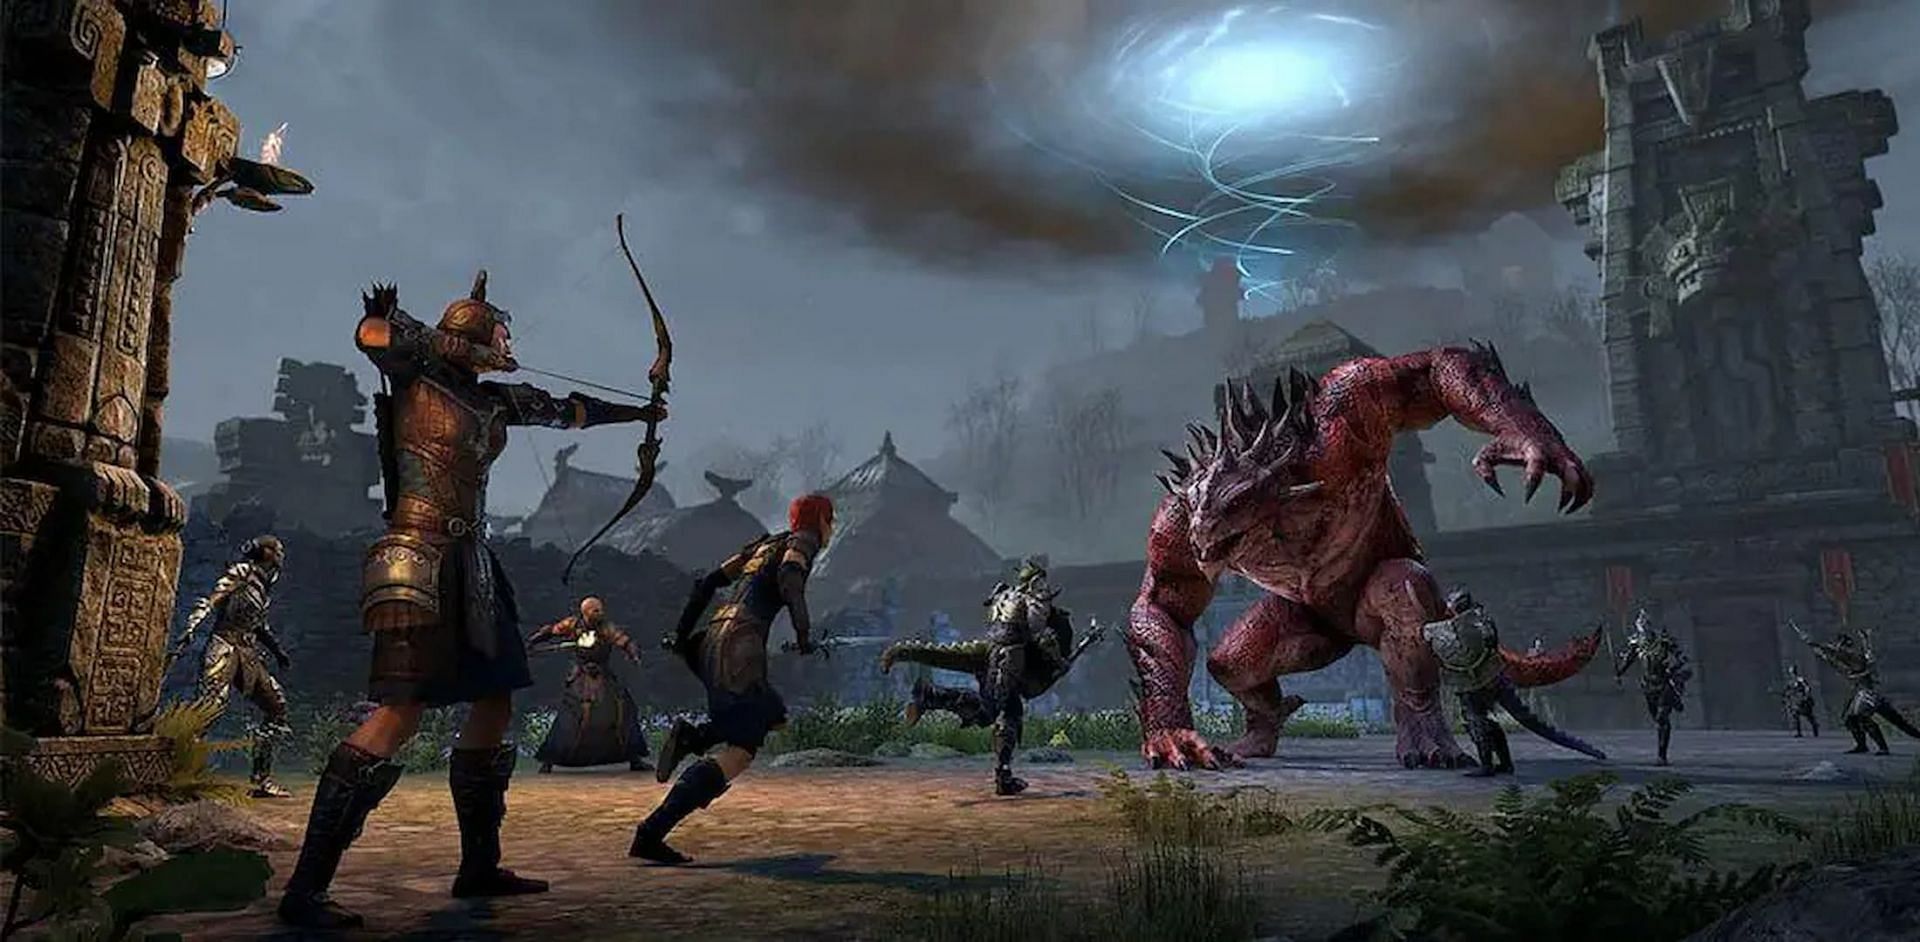 Bosses in the Rockgrove Trial in Elder Scrolls Online. (Image via ZeniMax Online Studios)